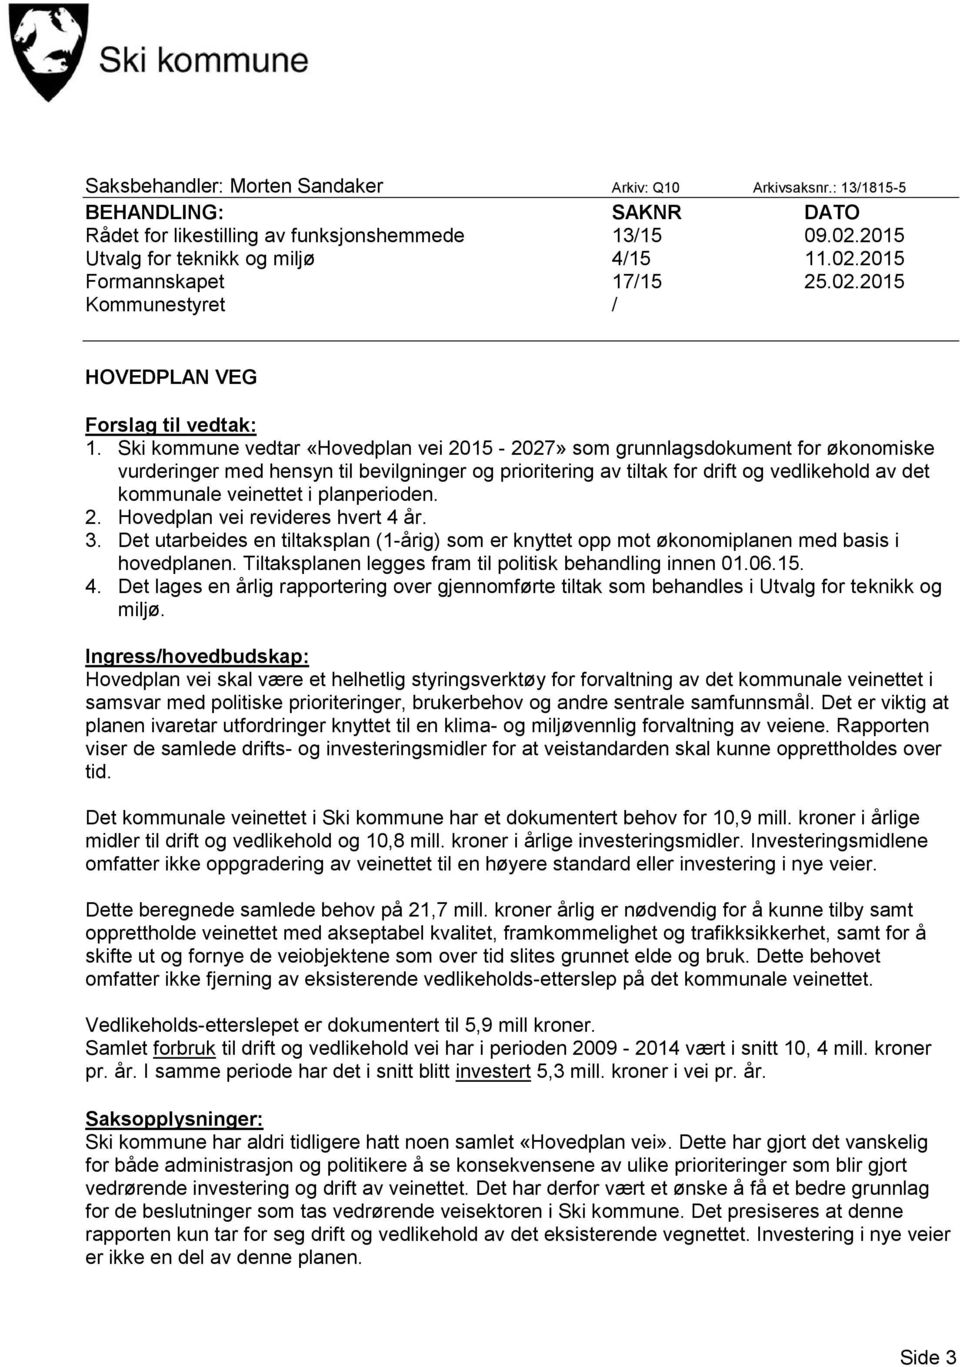 Ski kommune vedtar «Hovedplan vei 2015-2027» som grunnlagsdokument for økonomiske vurderinger med hensyn til bevilgninger og prioritering av tiltak for drift og vedlikehold av det kommunale veinettet